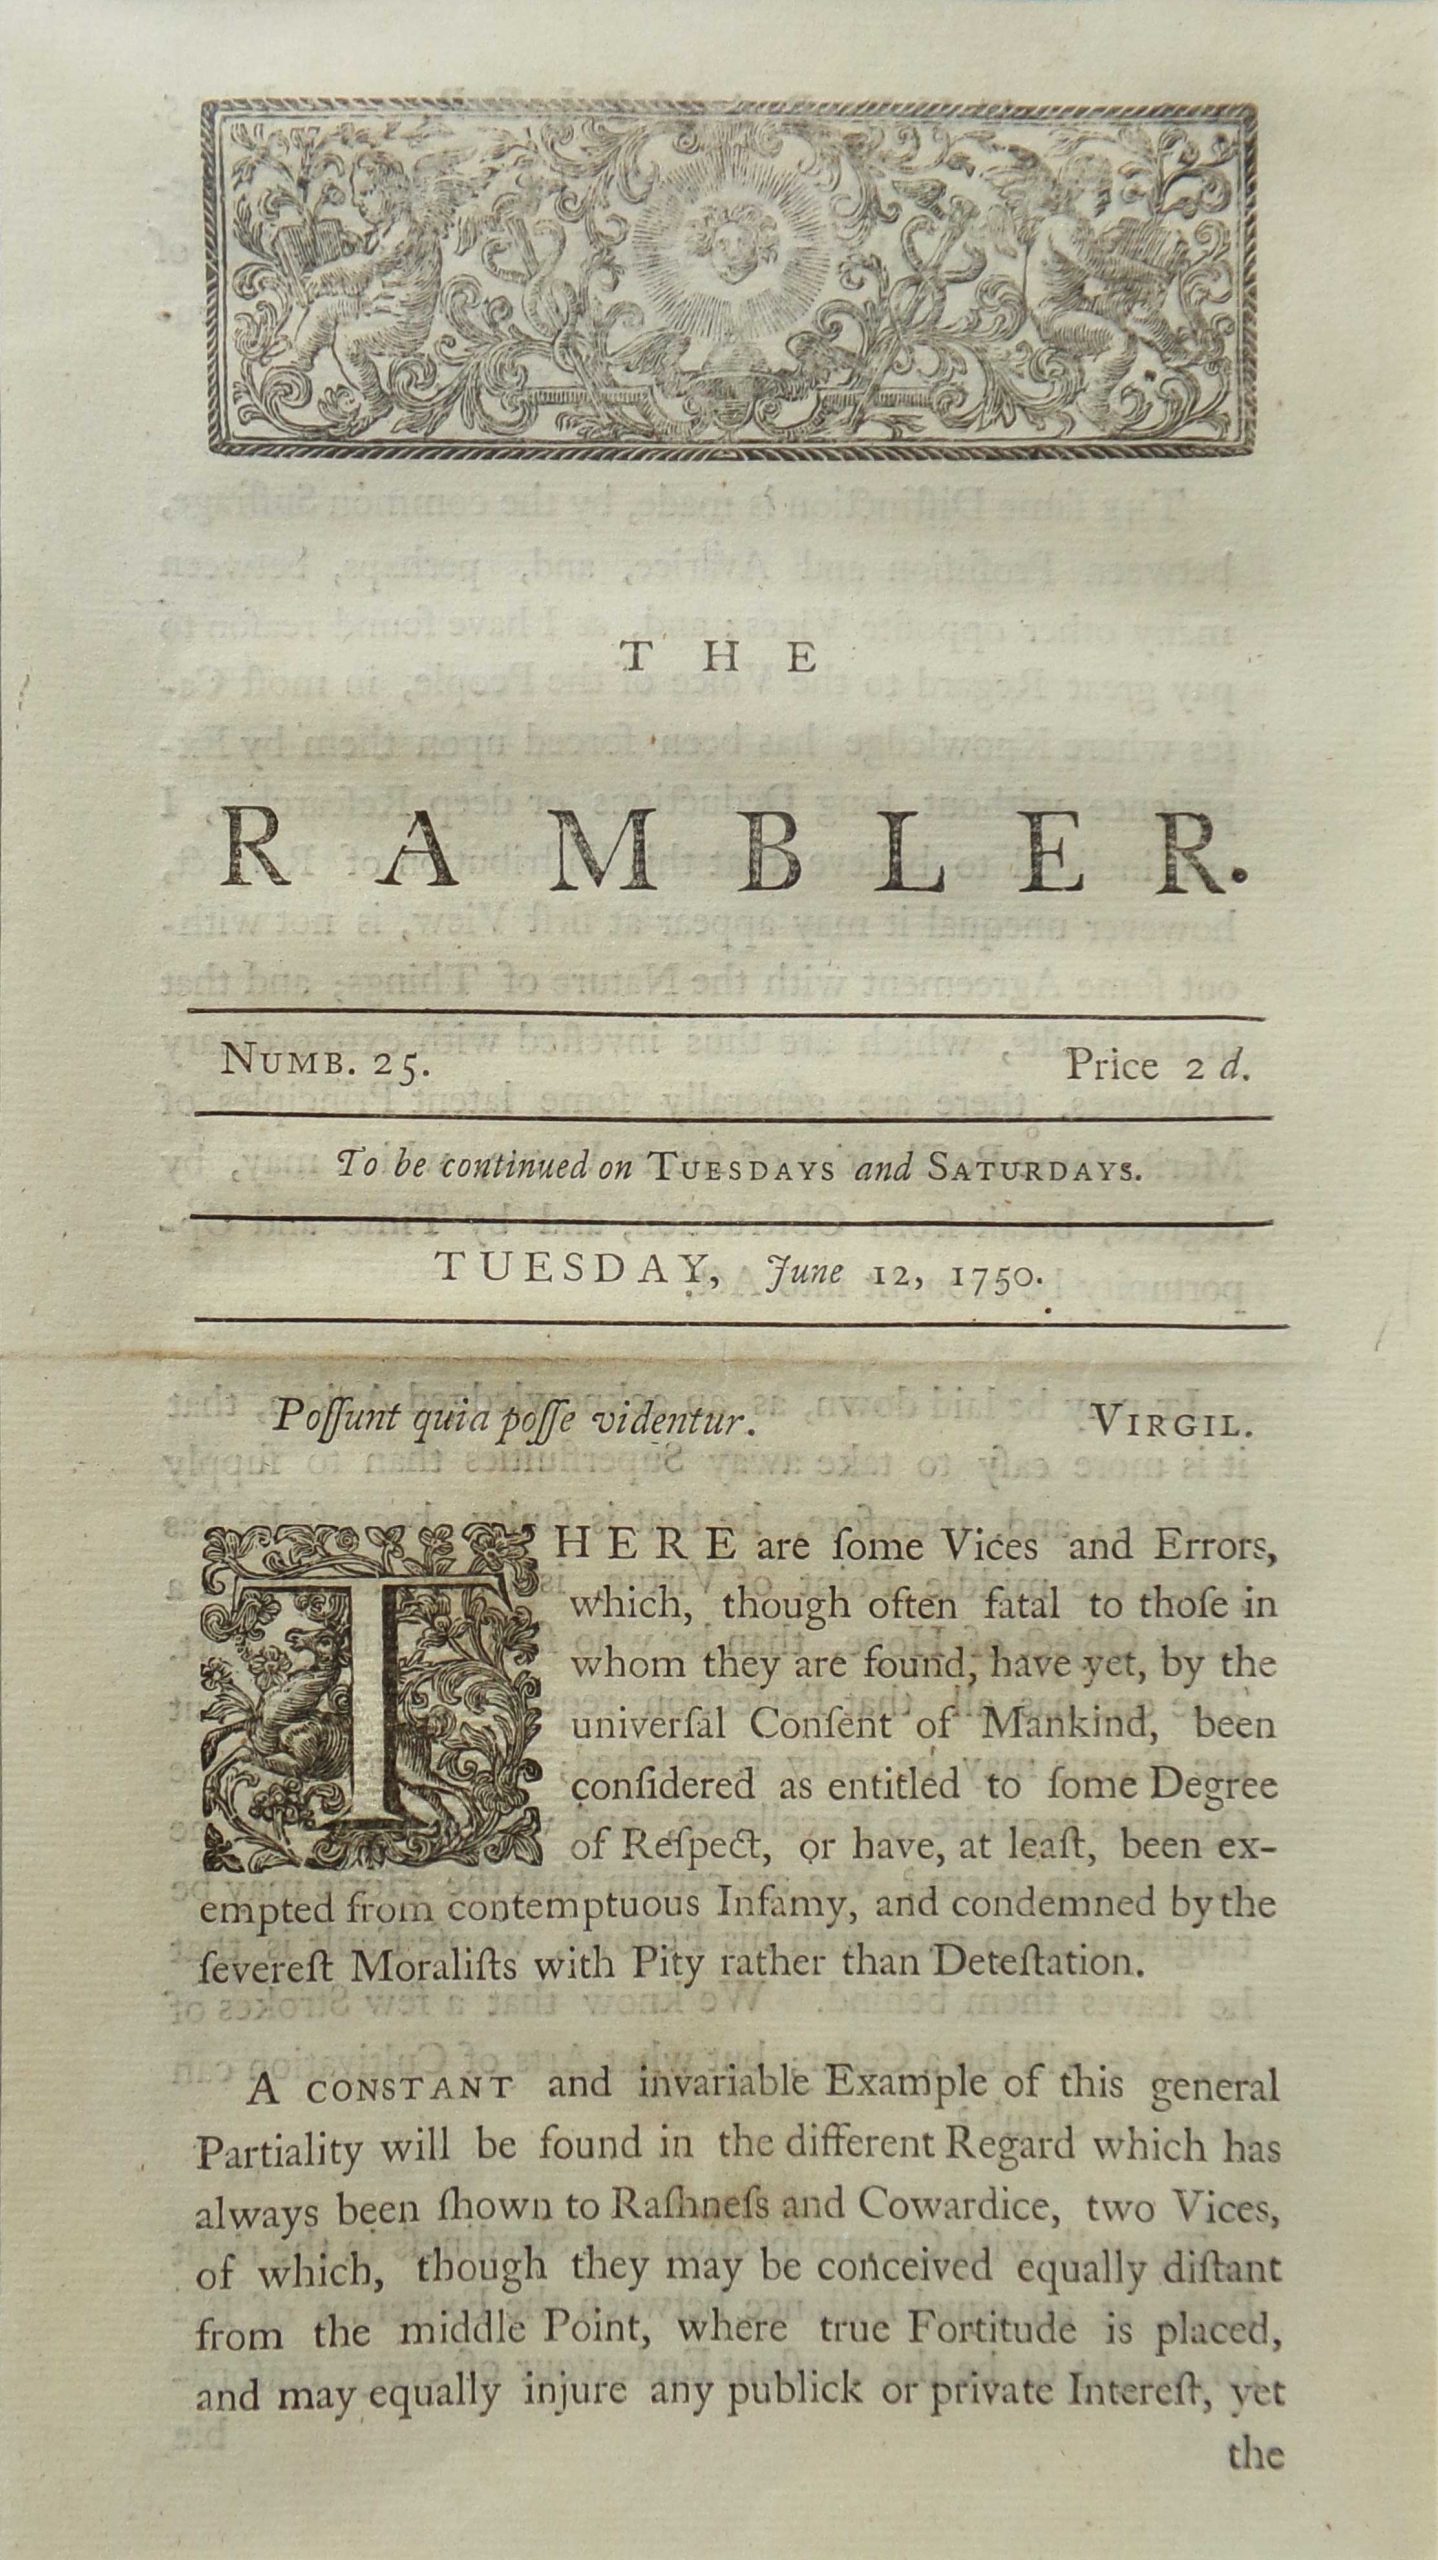 Samuel Johnson's The Rambler, 12 June 1750